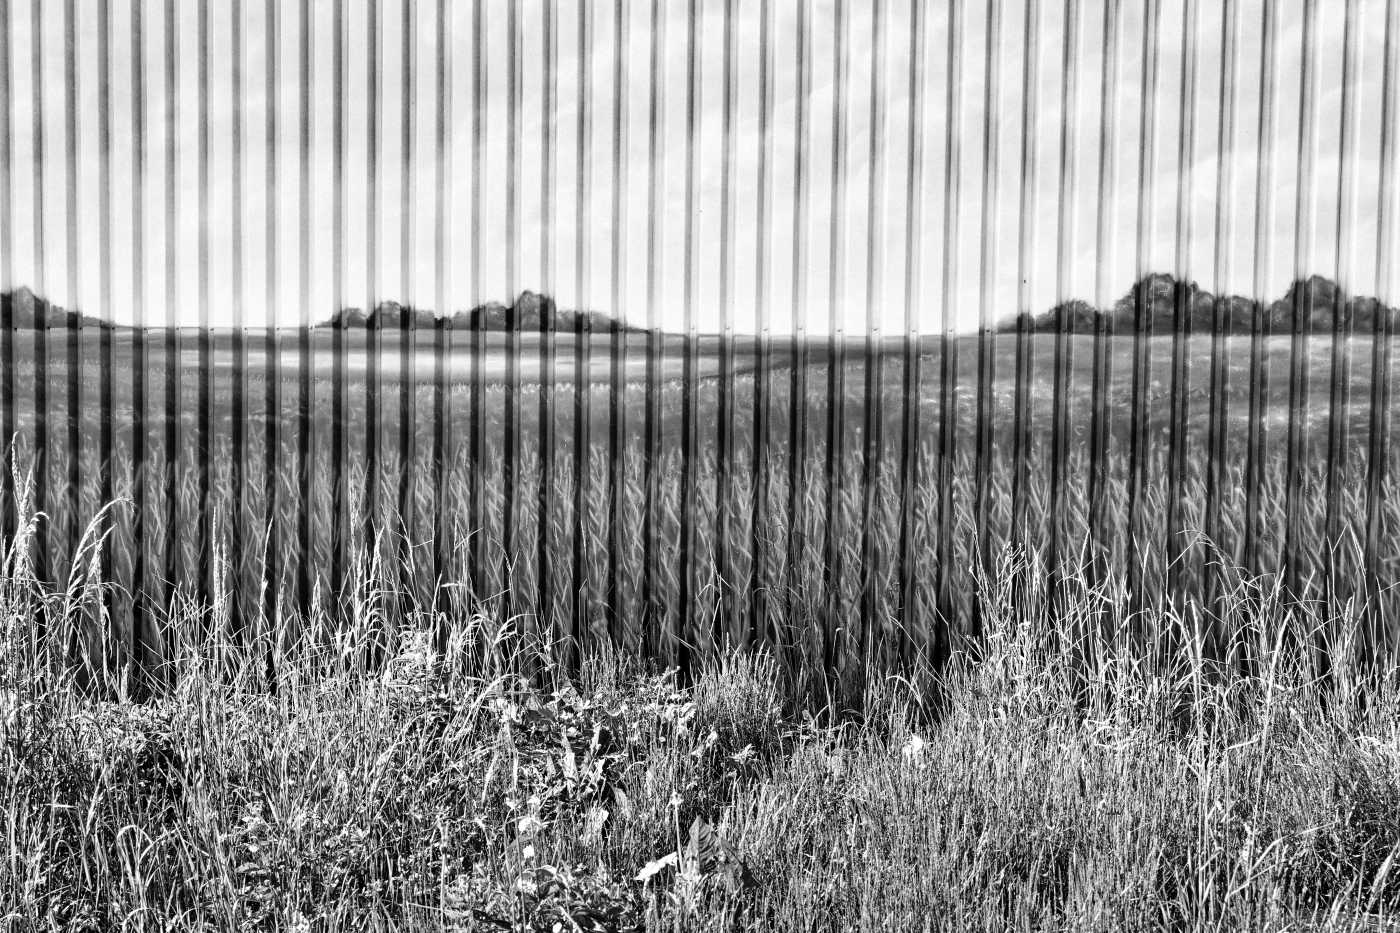 Hinter einer Wiese zeigt sich eine Wand aus Profilblech, die mit einem Bild von einer Wiese und einer Landschaft verziert ist